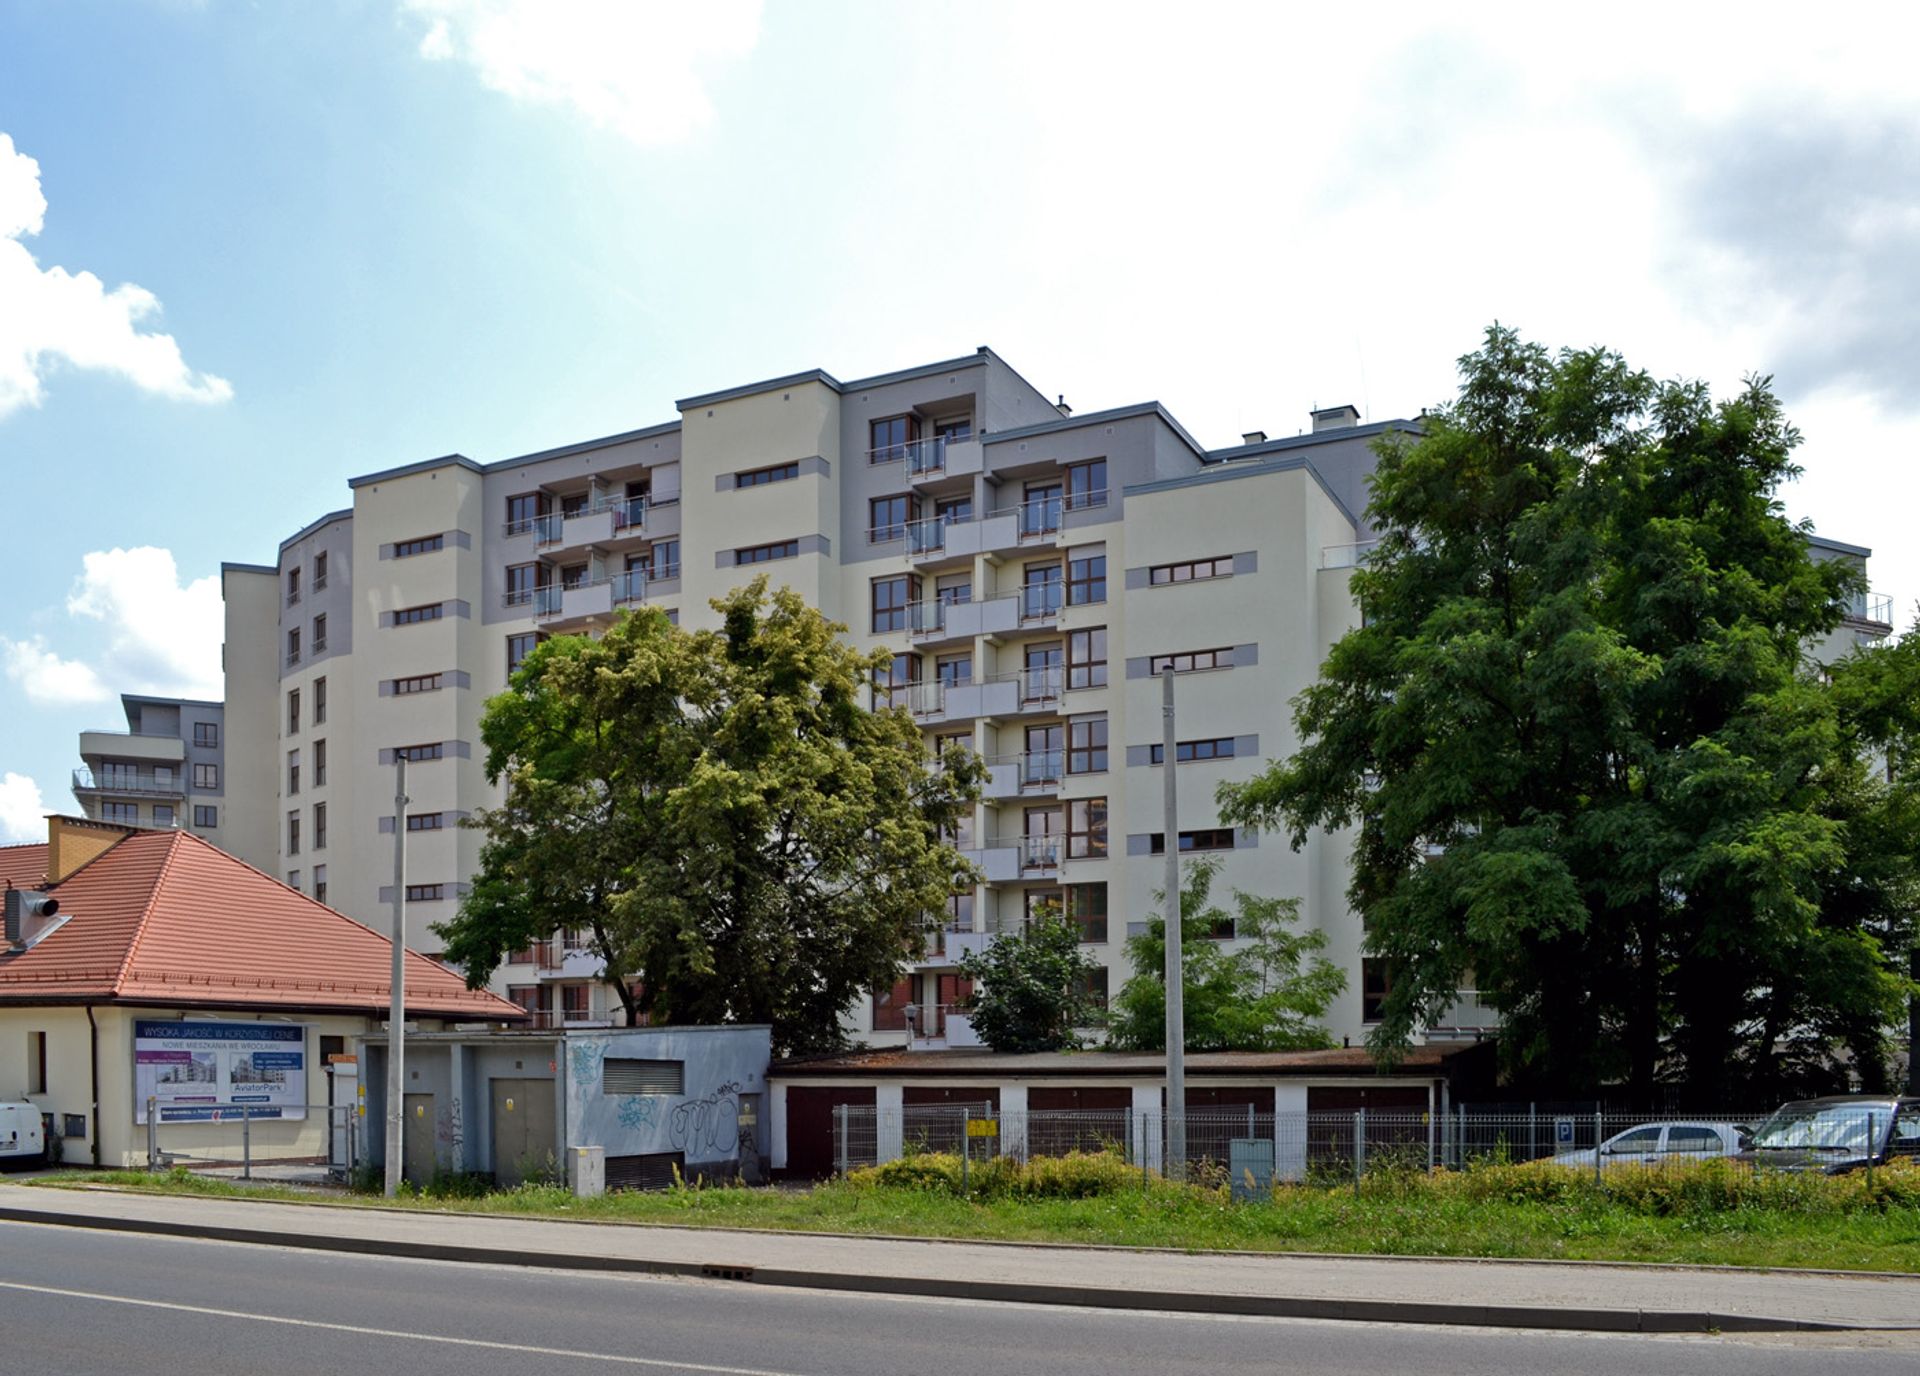  Mieszkanie we Wrocławiu za mniej niż 200 tys. zł?